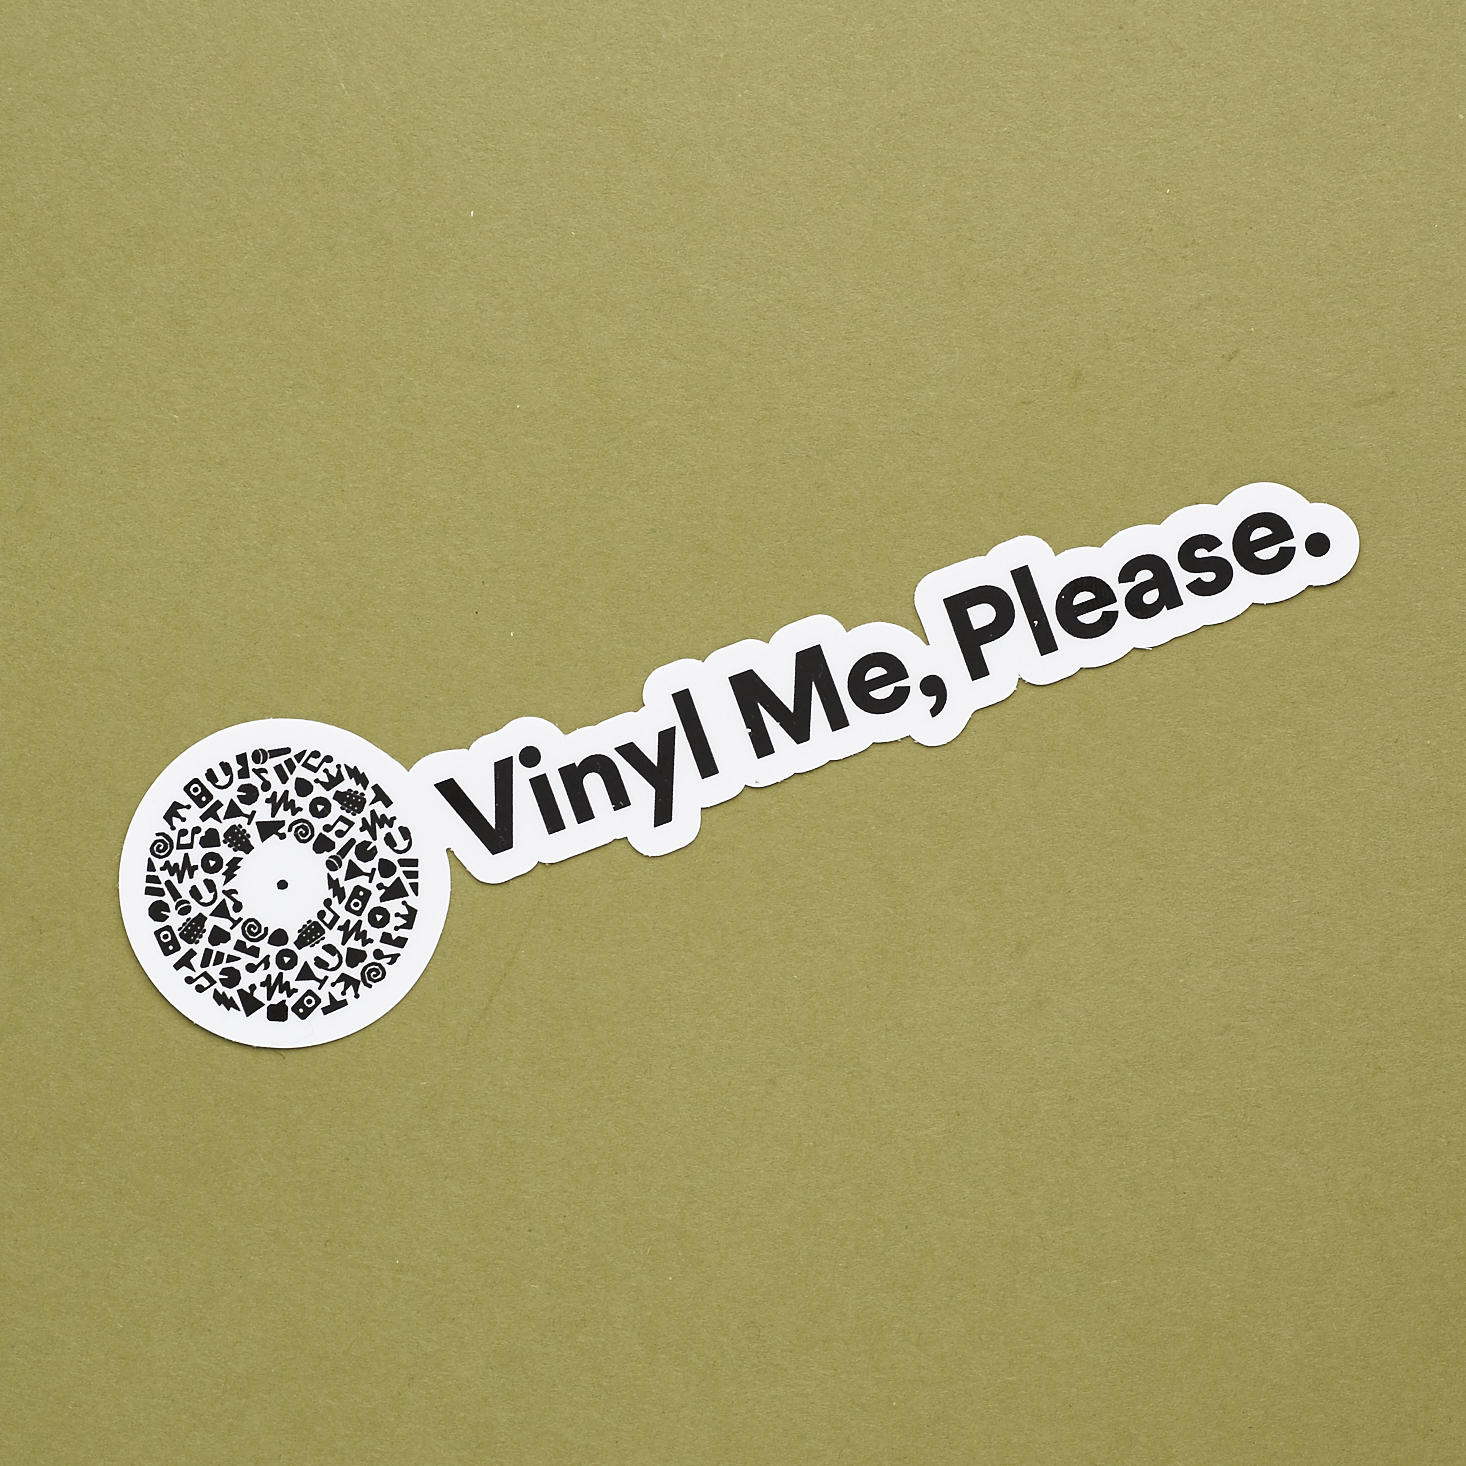 Vinyl-Me-Please-March-2017-0022